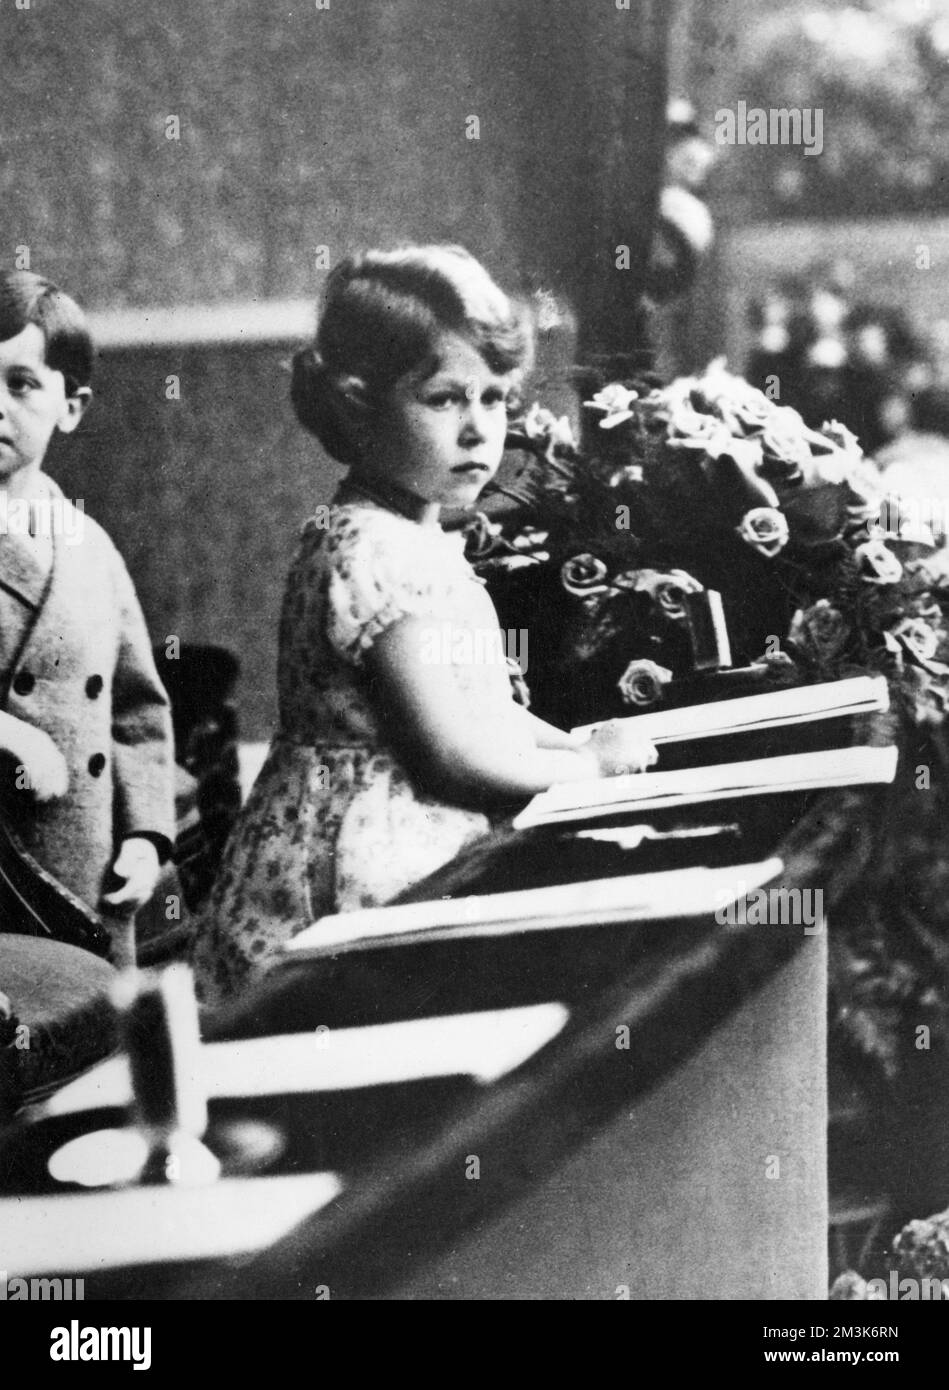 Prinzessin Elizabeth von York (jetzt Königin Elizabeth II.) im Theater mit mehreren Begleitern aus der Kindheit gesehen. Datum: 1932-33 Stockfoto